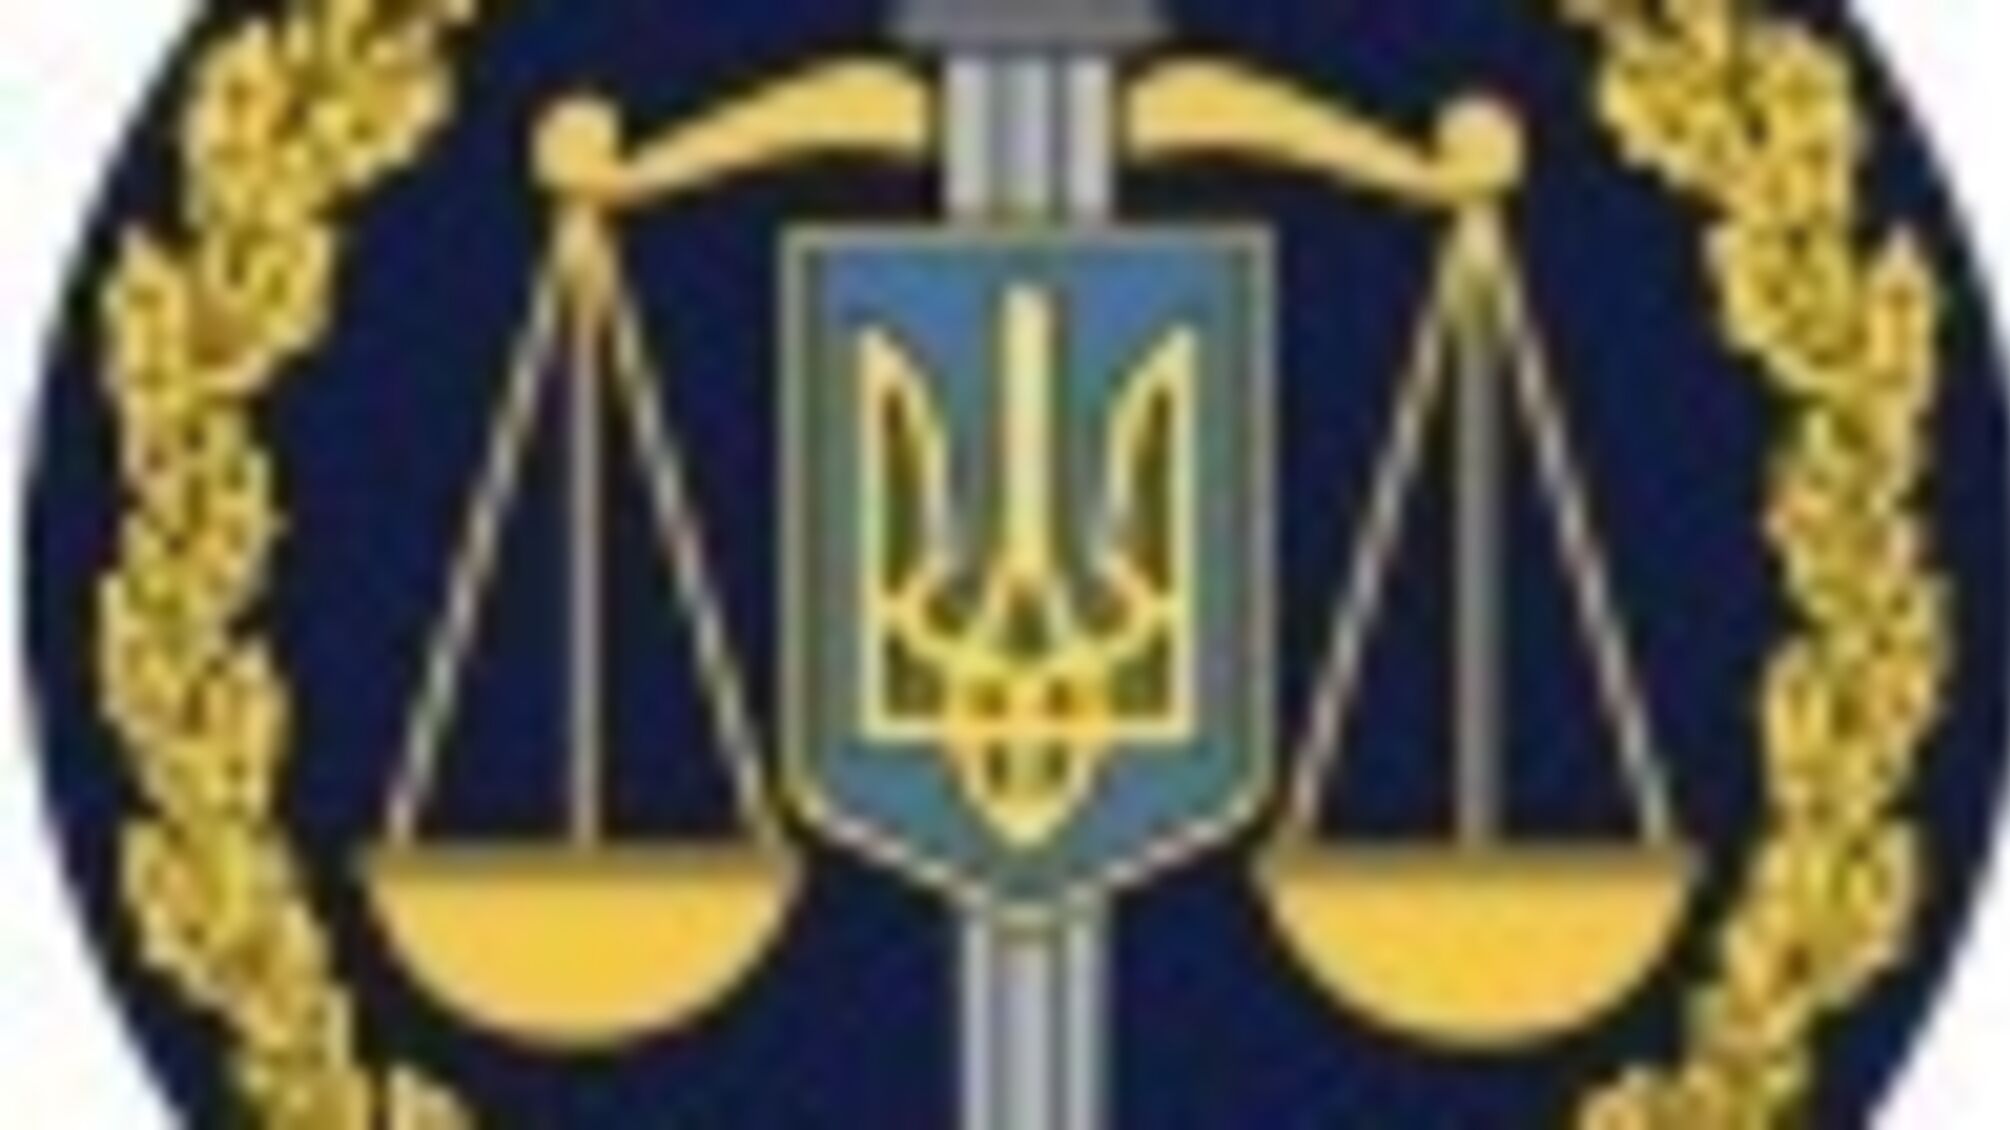 Харківський апеляційний суд підтримав позицію прокуратури щодо визнання права власності на квартиру за Харківською міською територіальною громадою